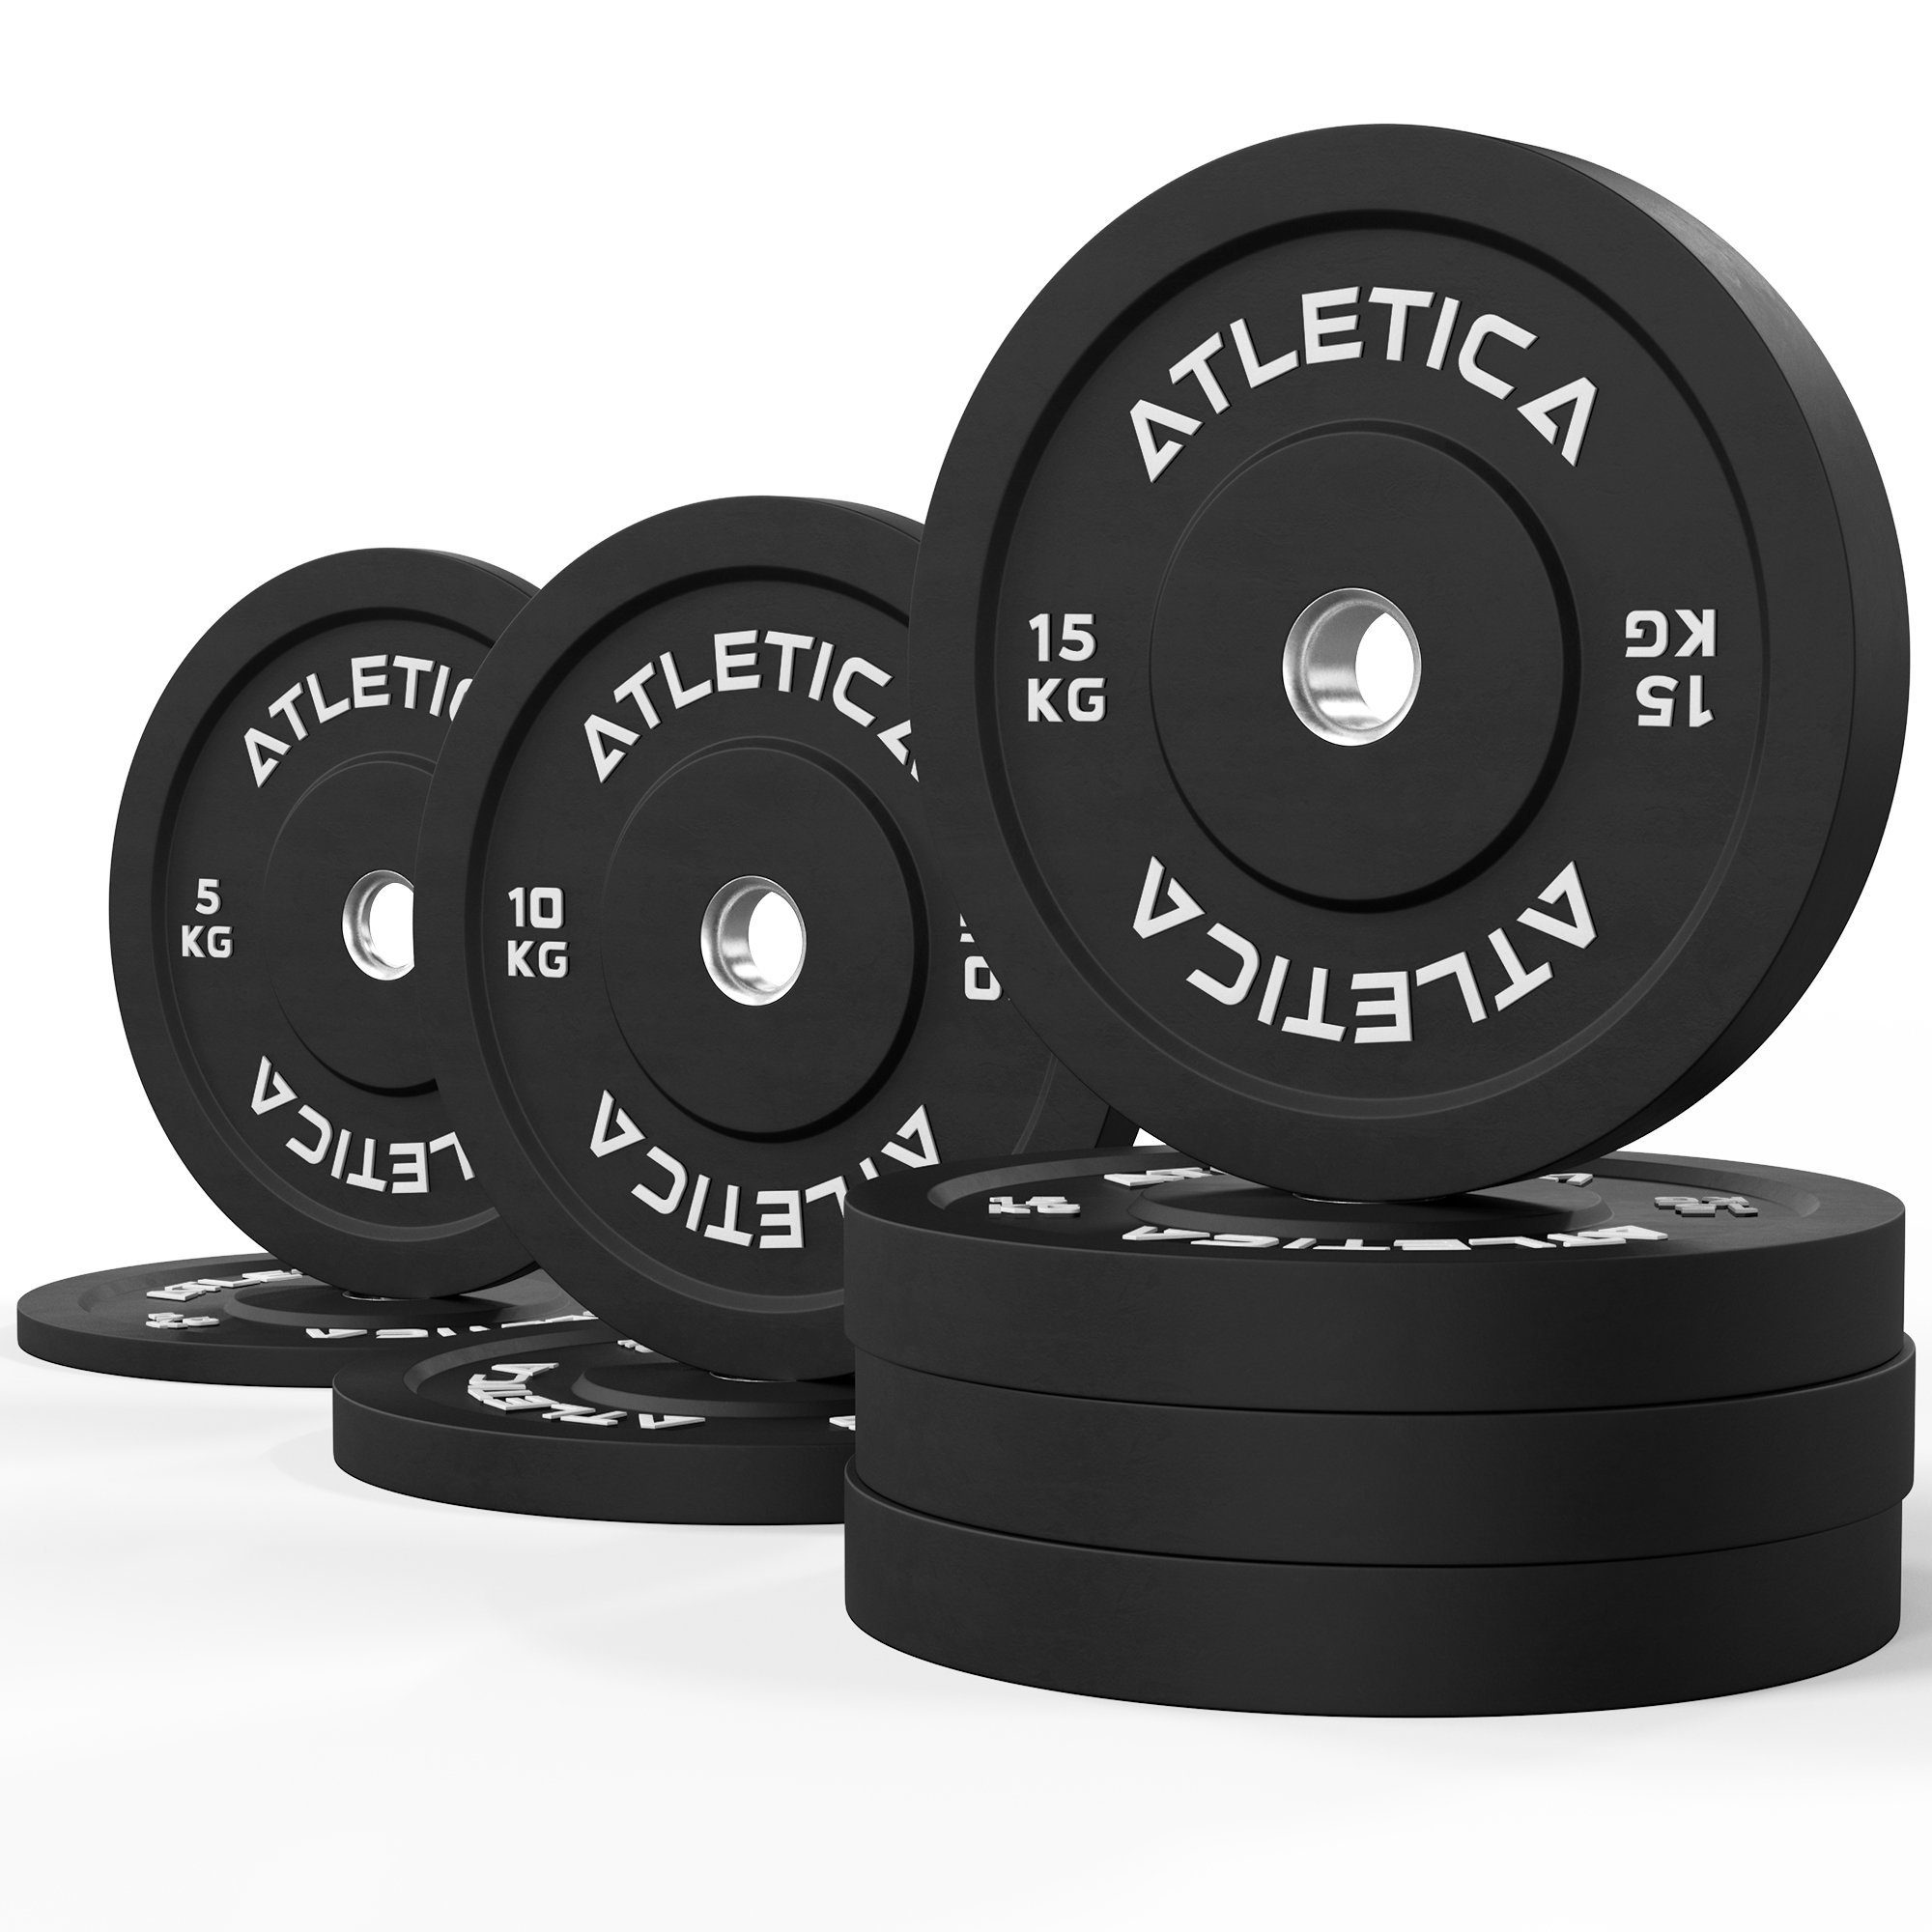 ATLETICA Hantelscheiben 90kg Bumper Plates Set ∣ aus 2x 5 kg ∣ 2x 10 kg ∣ 4x 15 kg